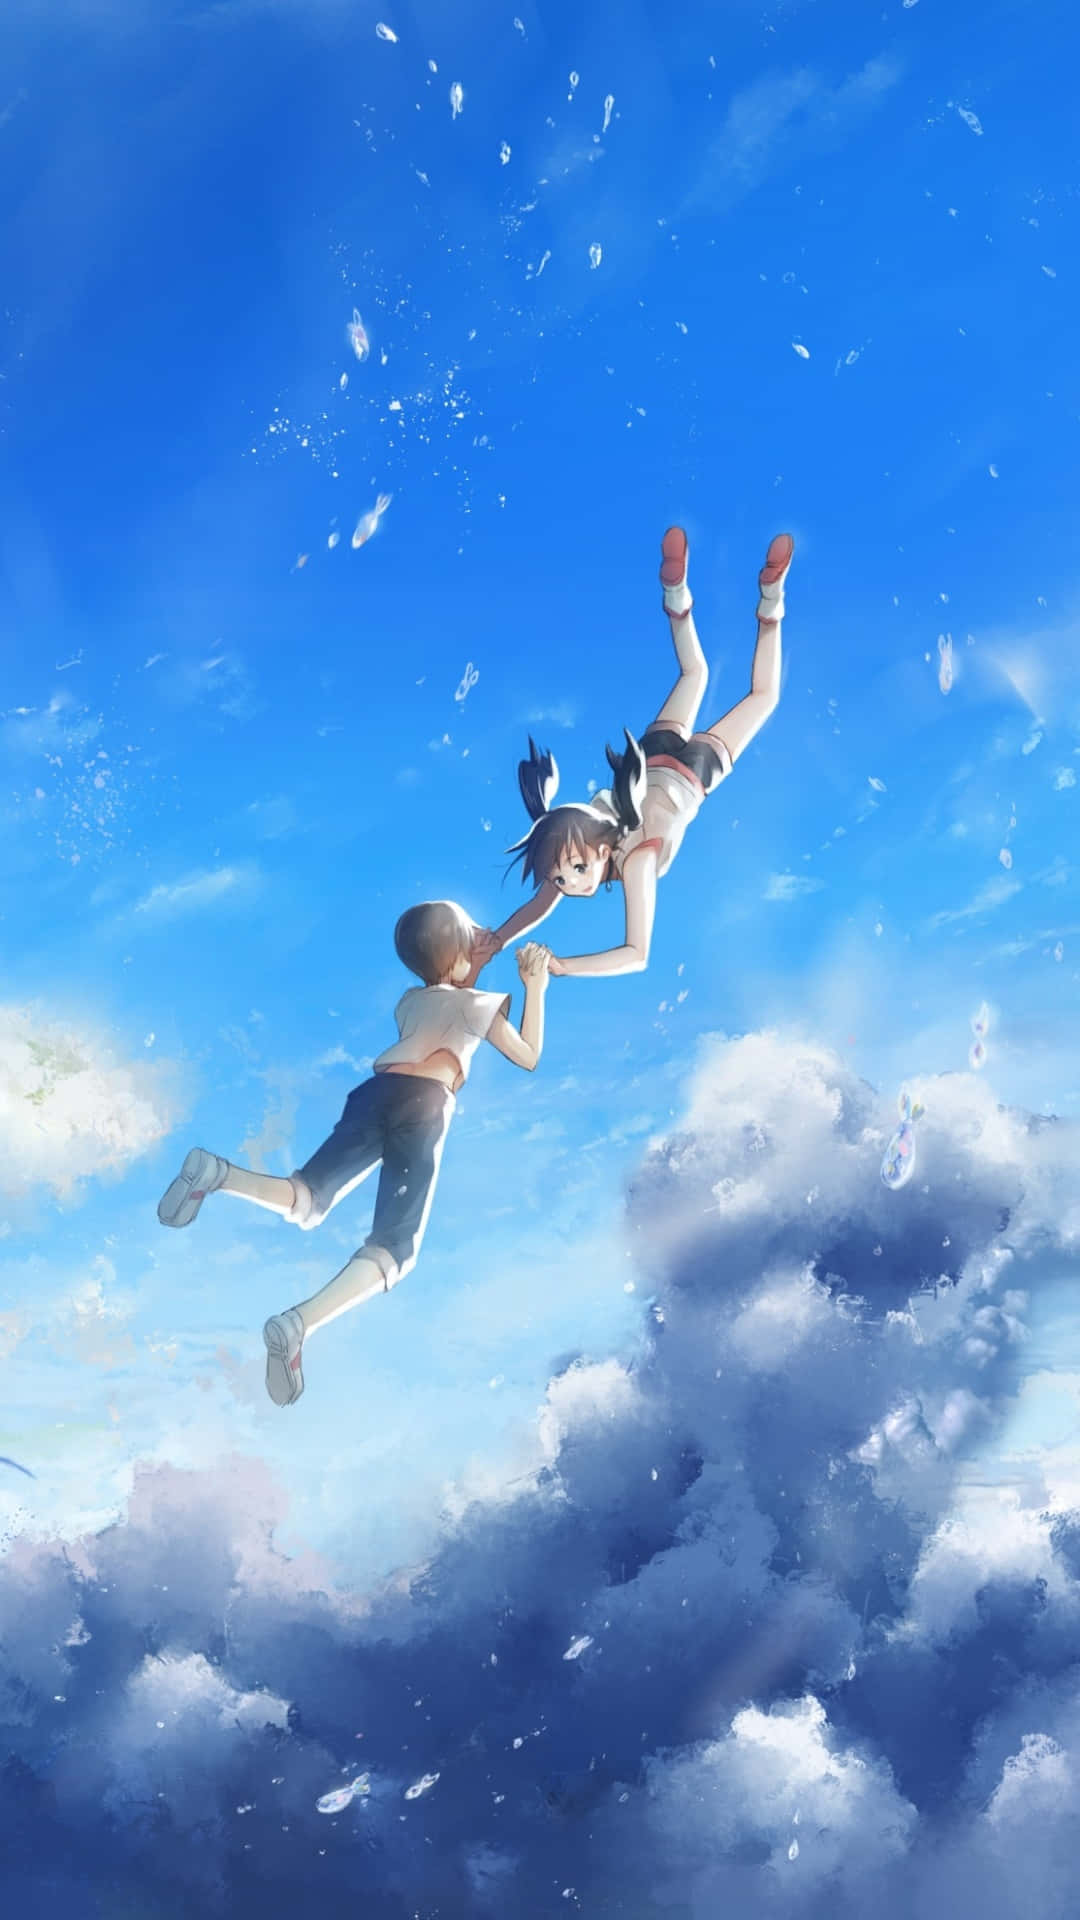 Unachica Y Un Chico Volando En El Cielo